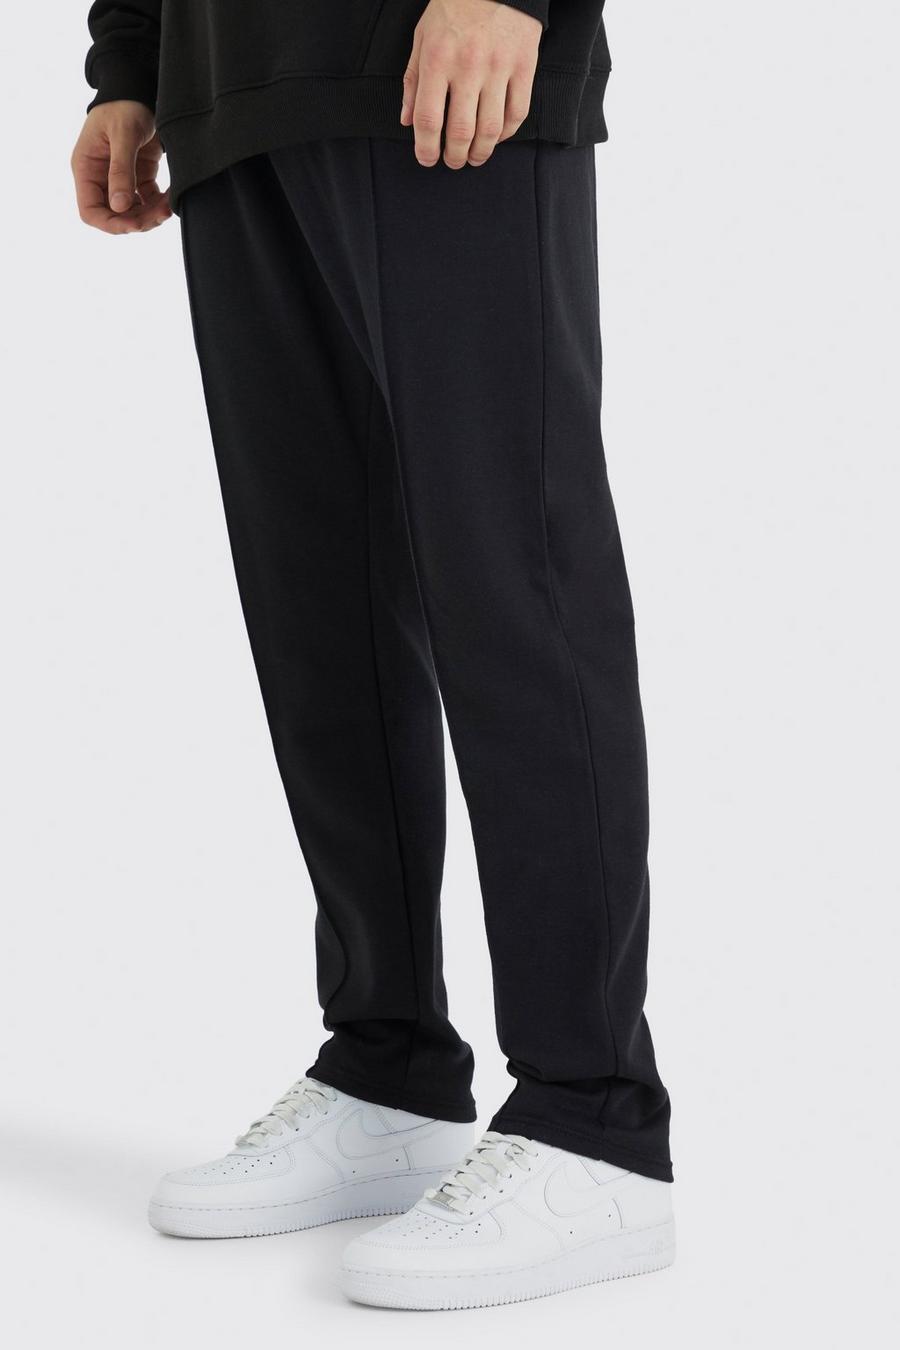 Pantalón deportivo Tall ajustado ajustado con alforza, Black image number 1